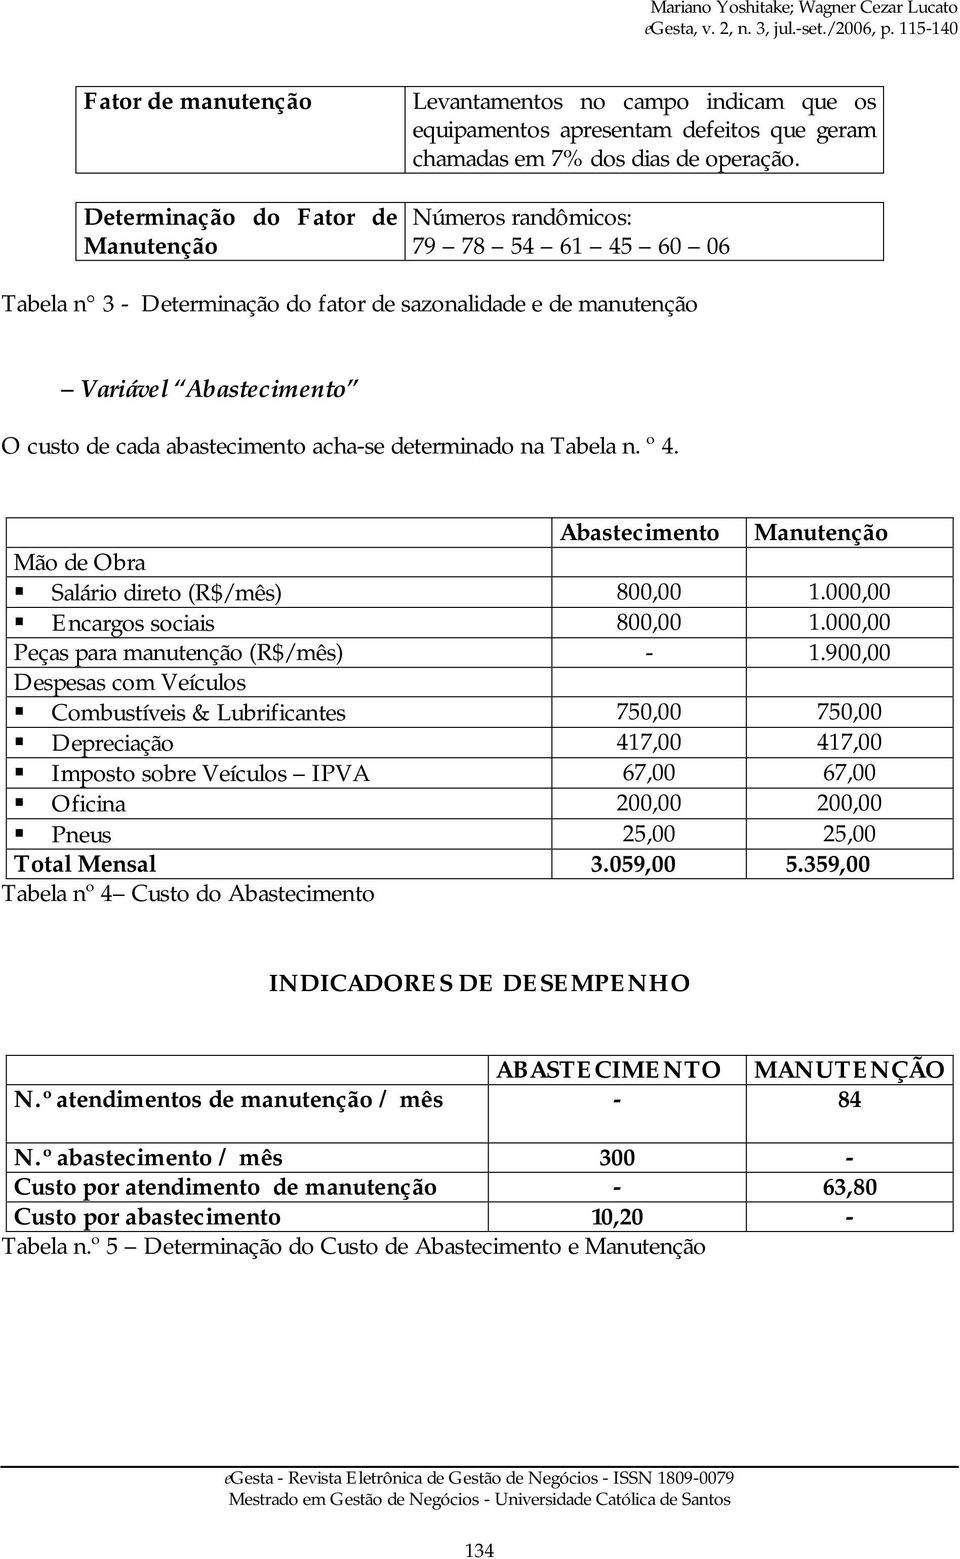 Abastecimento Manutenção Mão de Obra Salário direto (R$/mês) 800,00 1.000,00 Encargos sociais 800,00 1.000,00 Peças para manutenção (R$/mês) - 1.